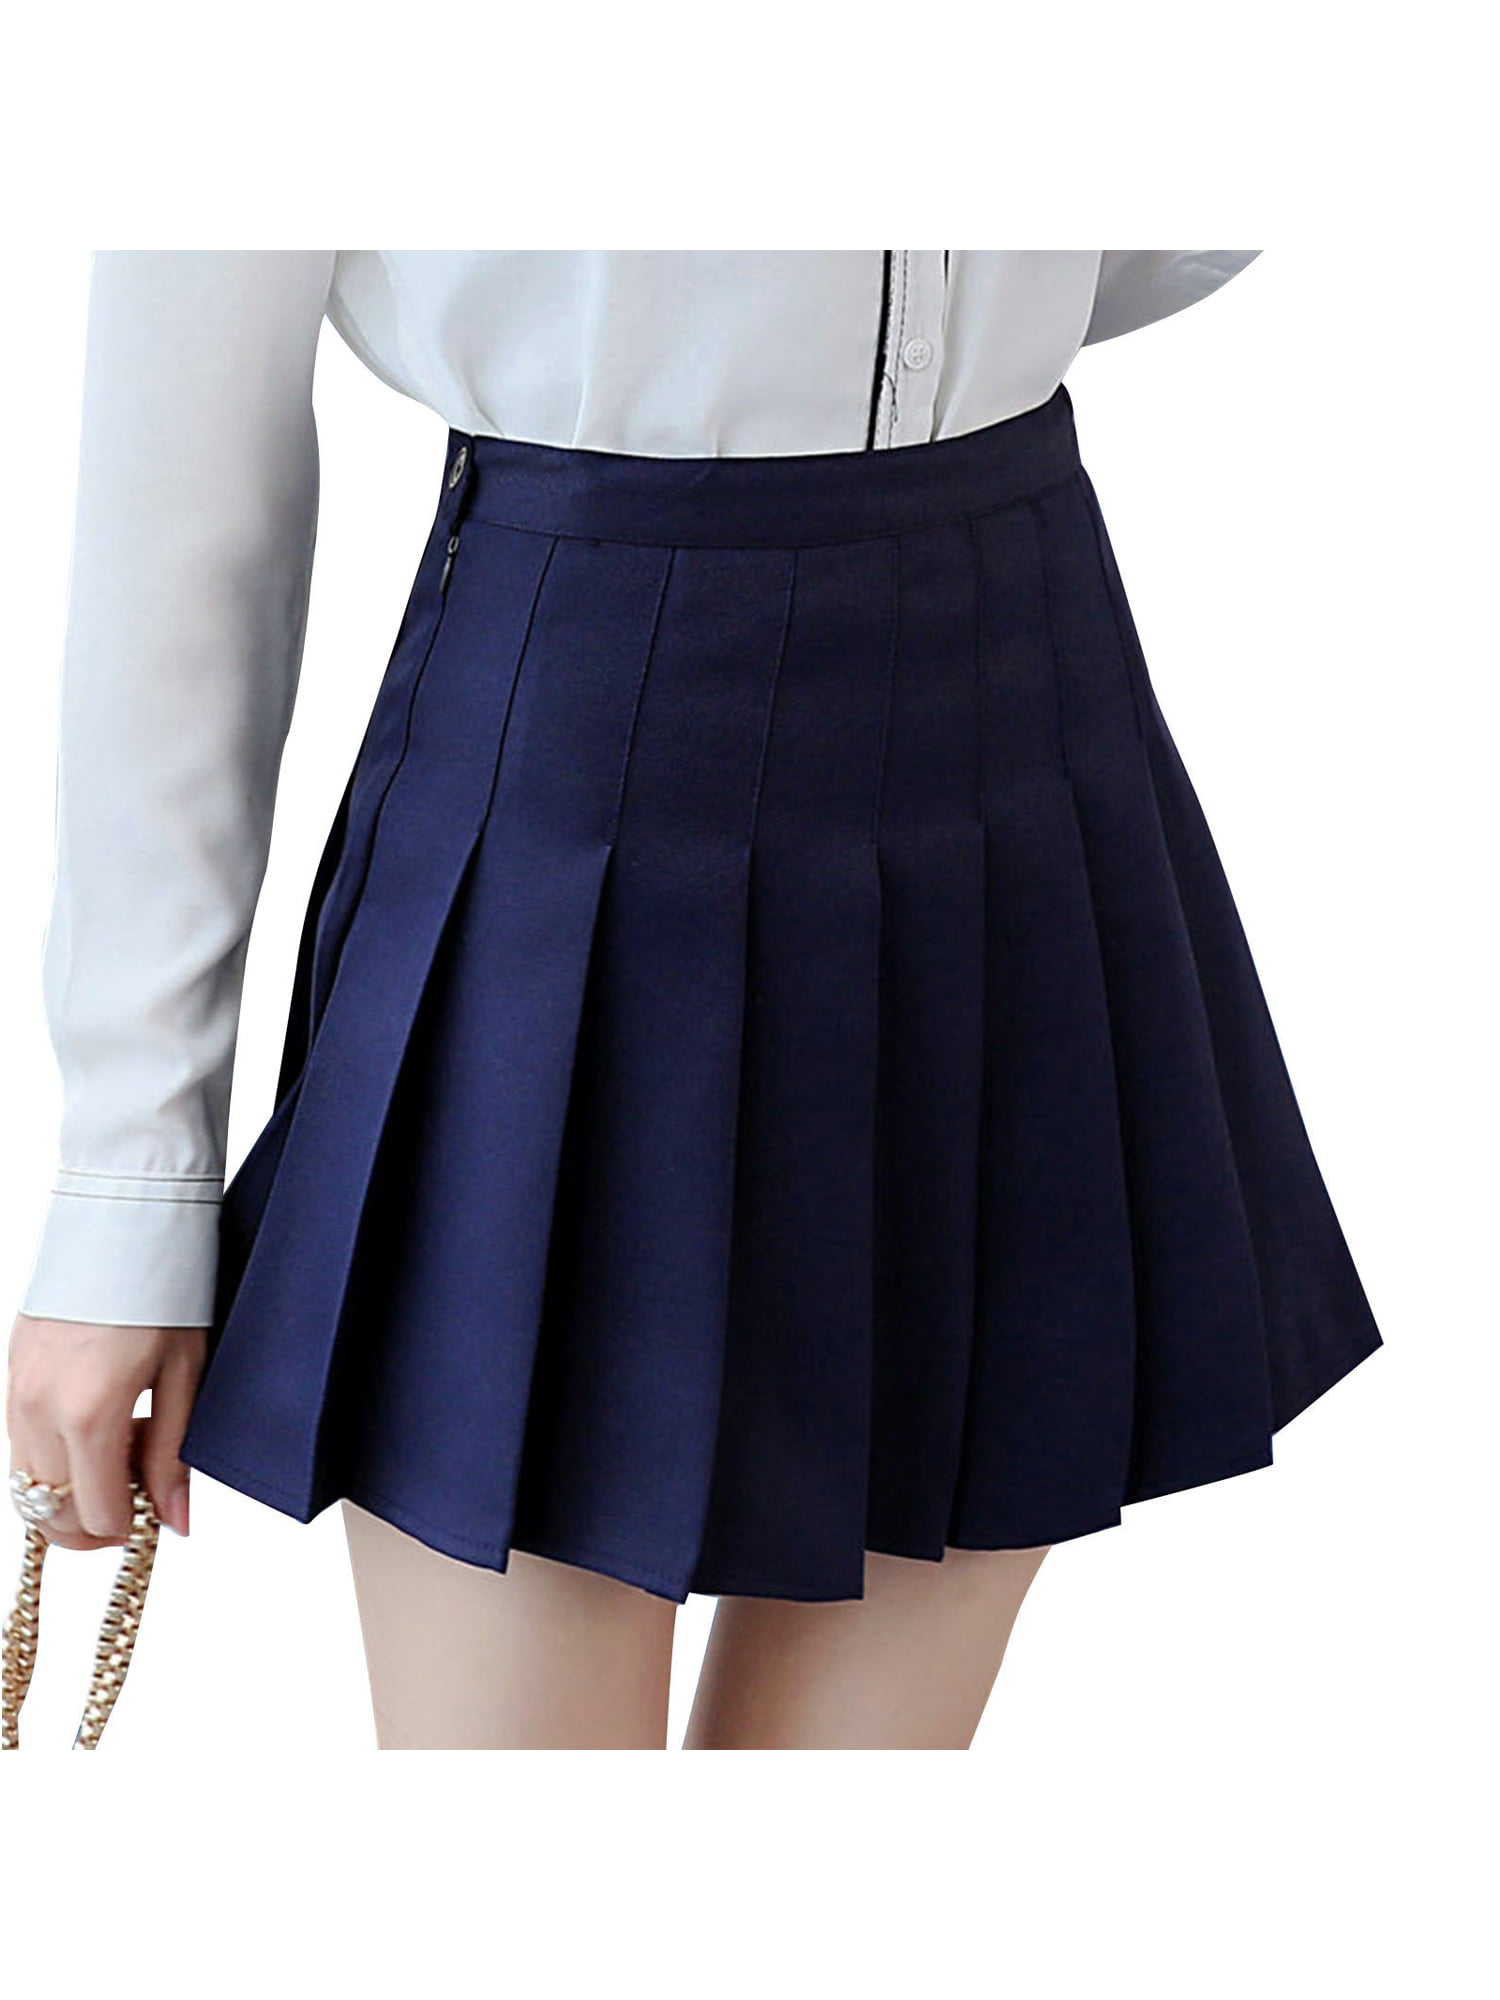 High Waisted Short Pleated Skater Tennis Skirt School Uniform for Women Girl